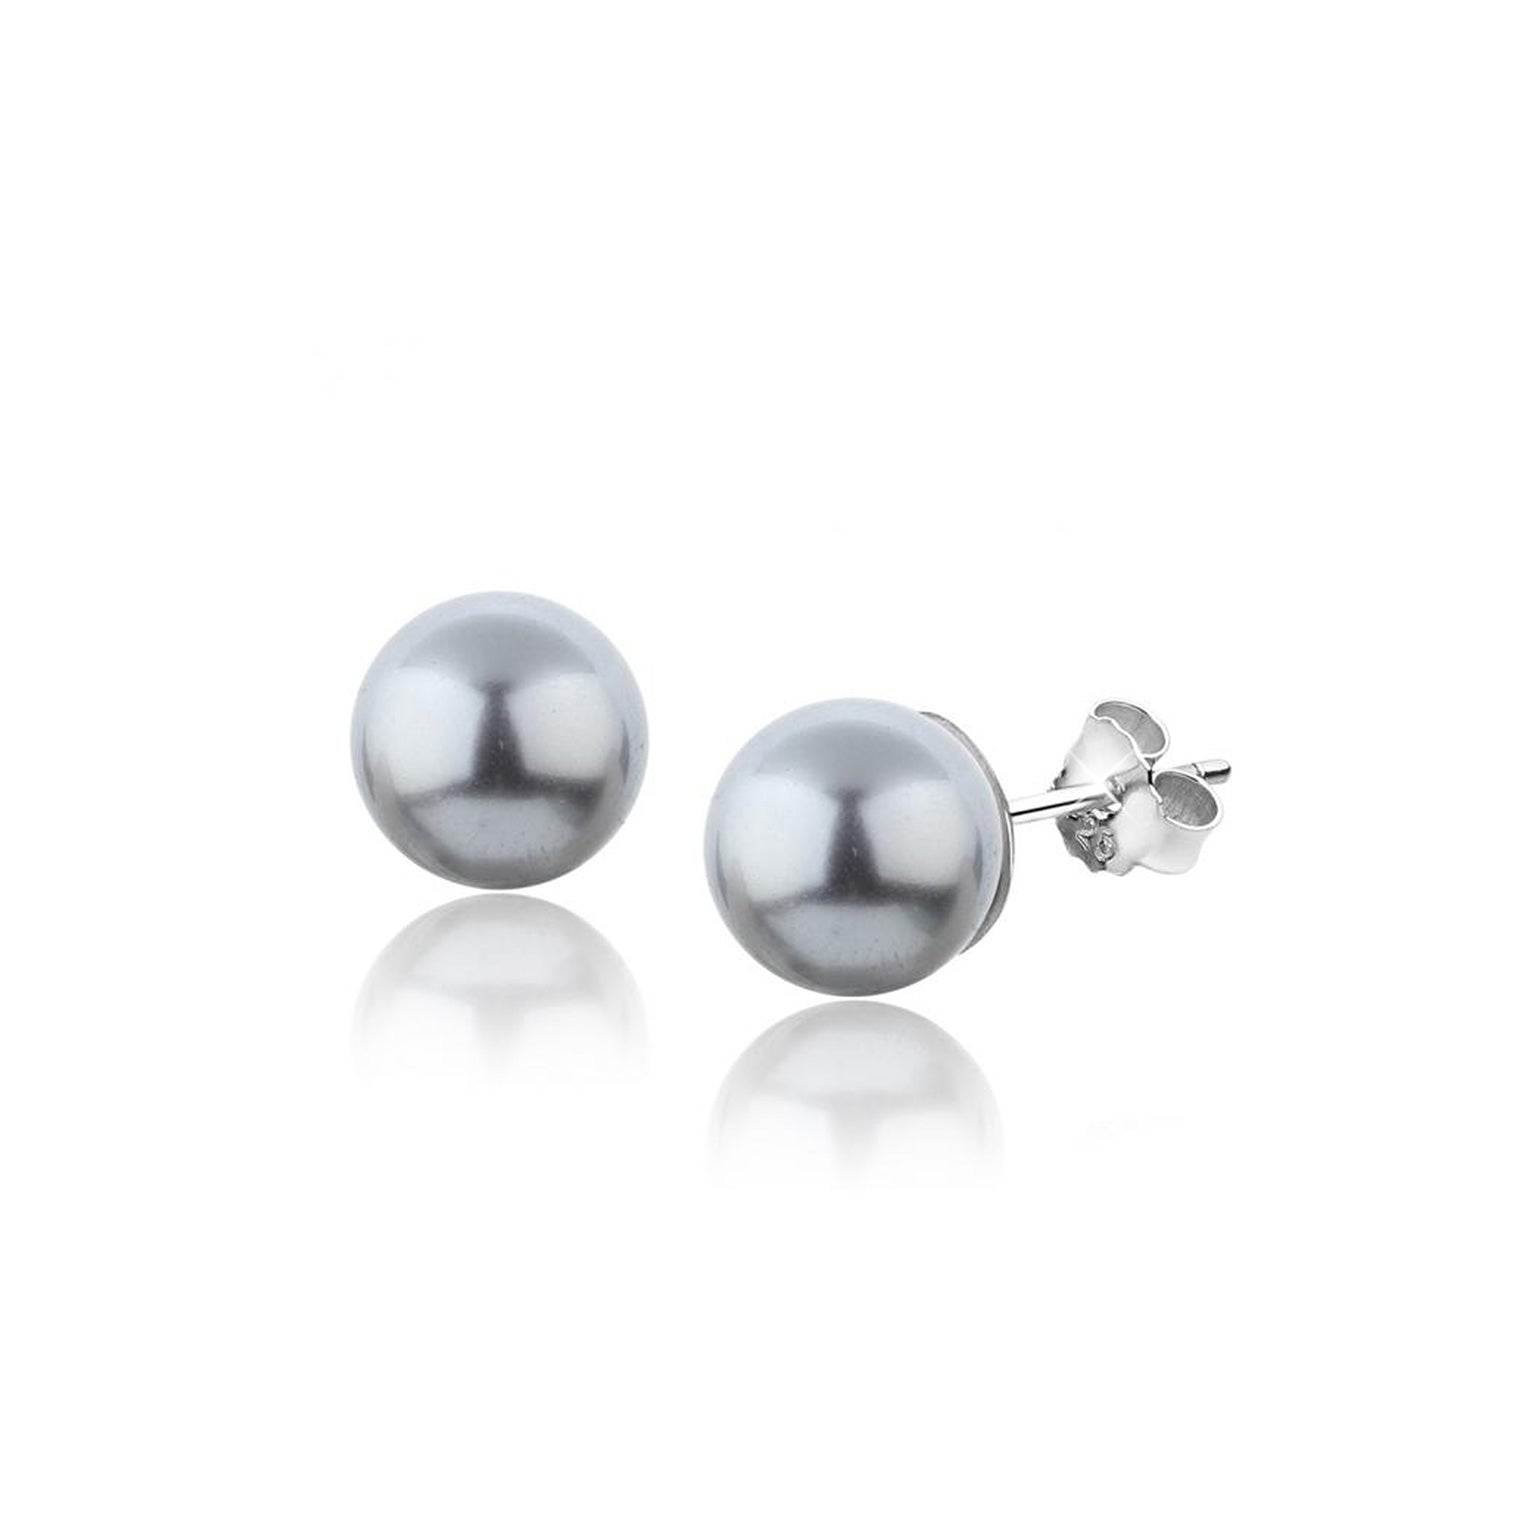 quality | High | Plug Elli pearl – Elli earrings Pearl Jewelry at